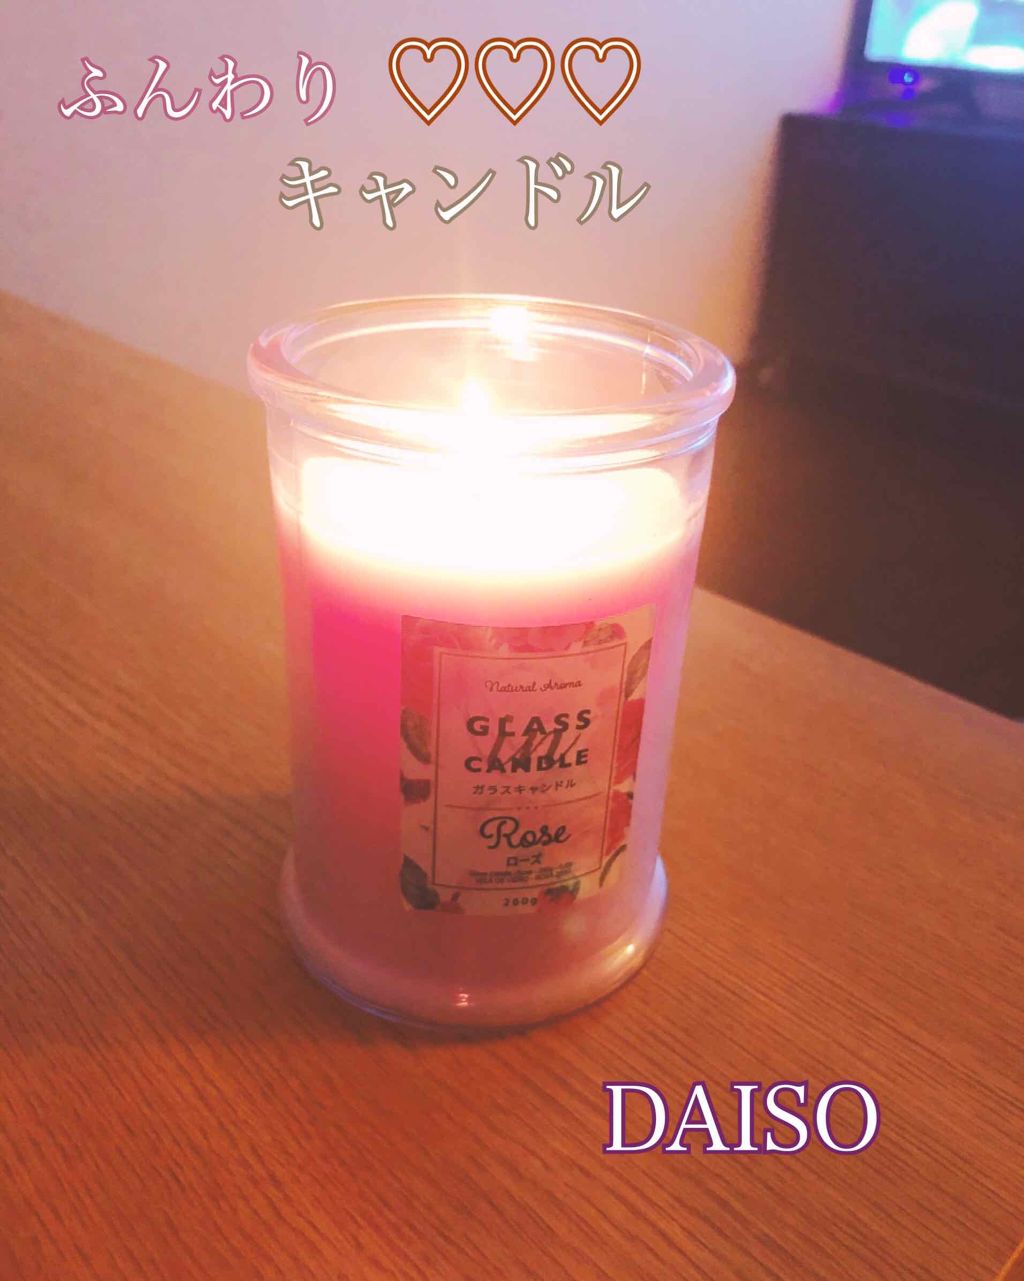 限定コスメ アロマキャンドル バニラの香り Daisoの口コミ 超優秀 100均で買えるおすすめコスメ コスメではなくてアロマ By にーぼ 混合肌 Lips